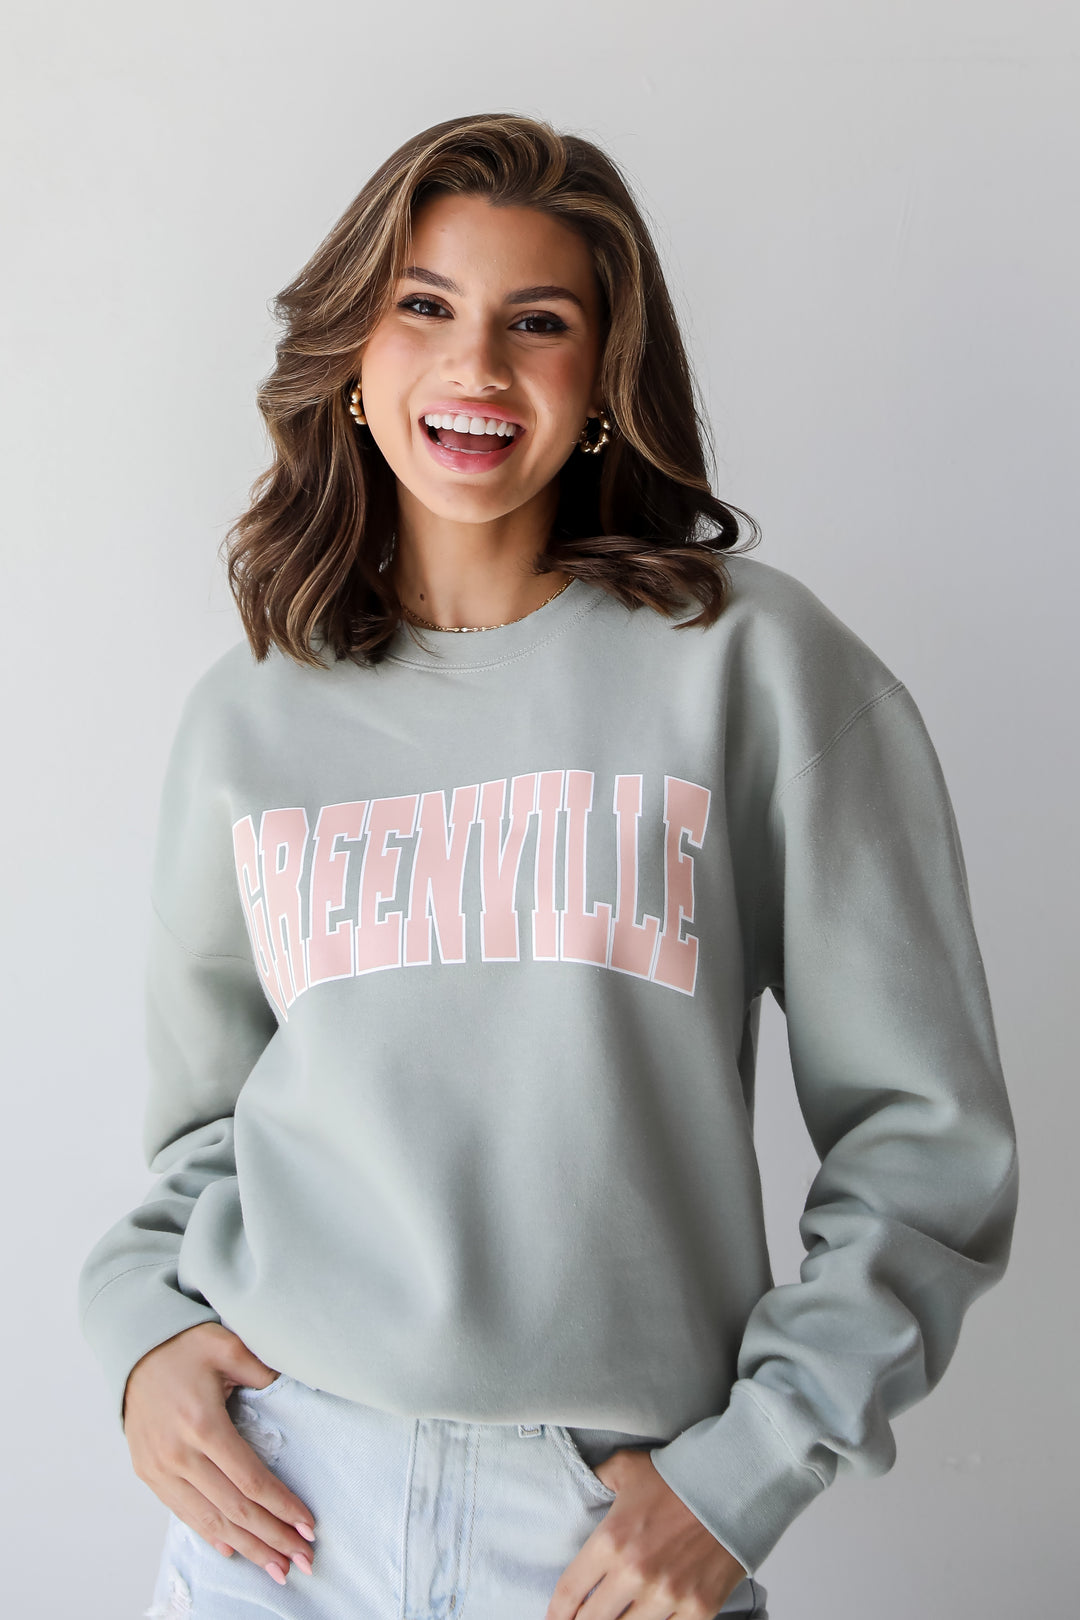 Sage Greenville Sweatshirt